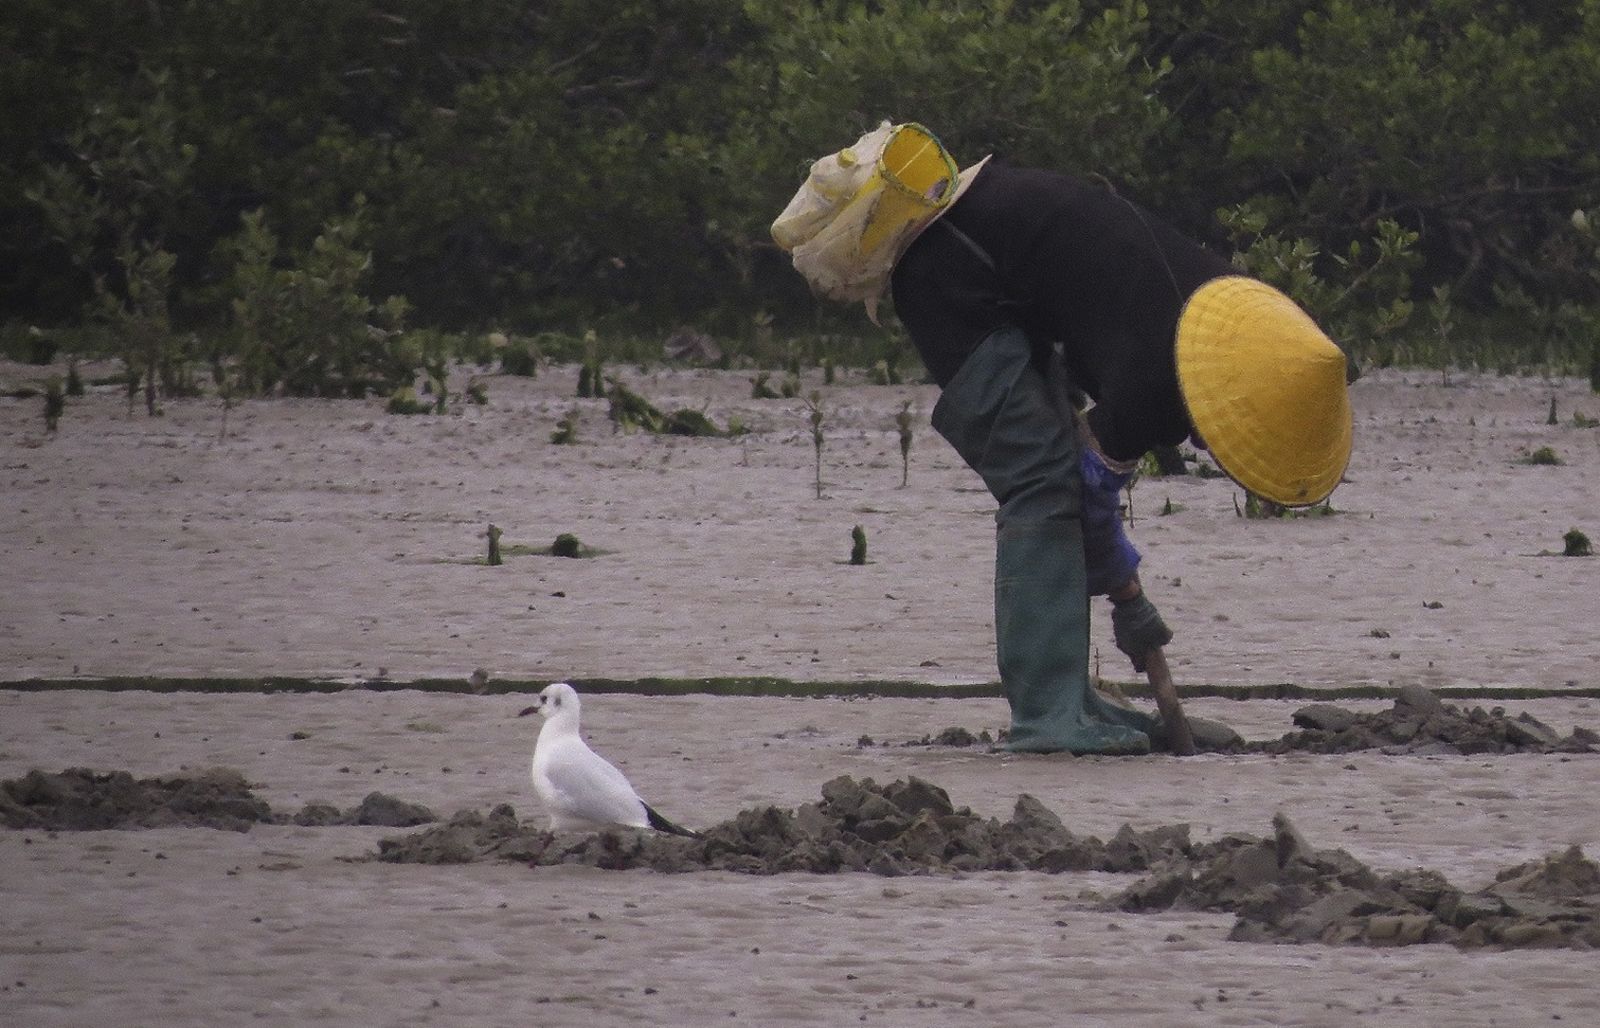 Pescador local próximo a pássaro enquanto trabalhava na costa. Crédito: Feng and Liang (2020), Fig. 1